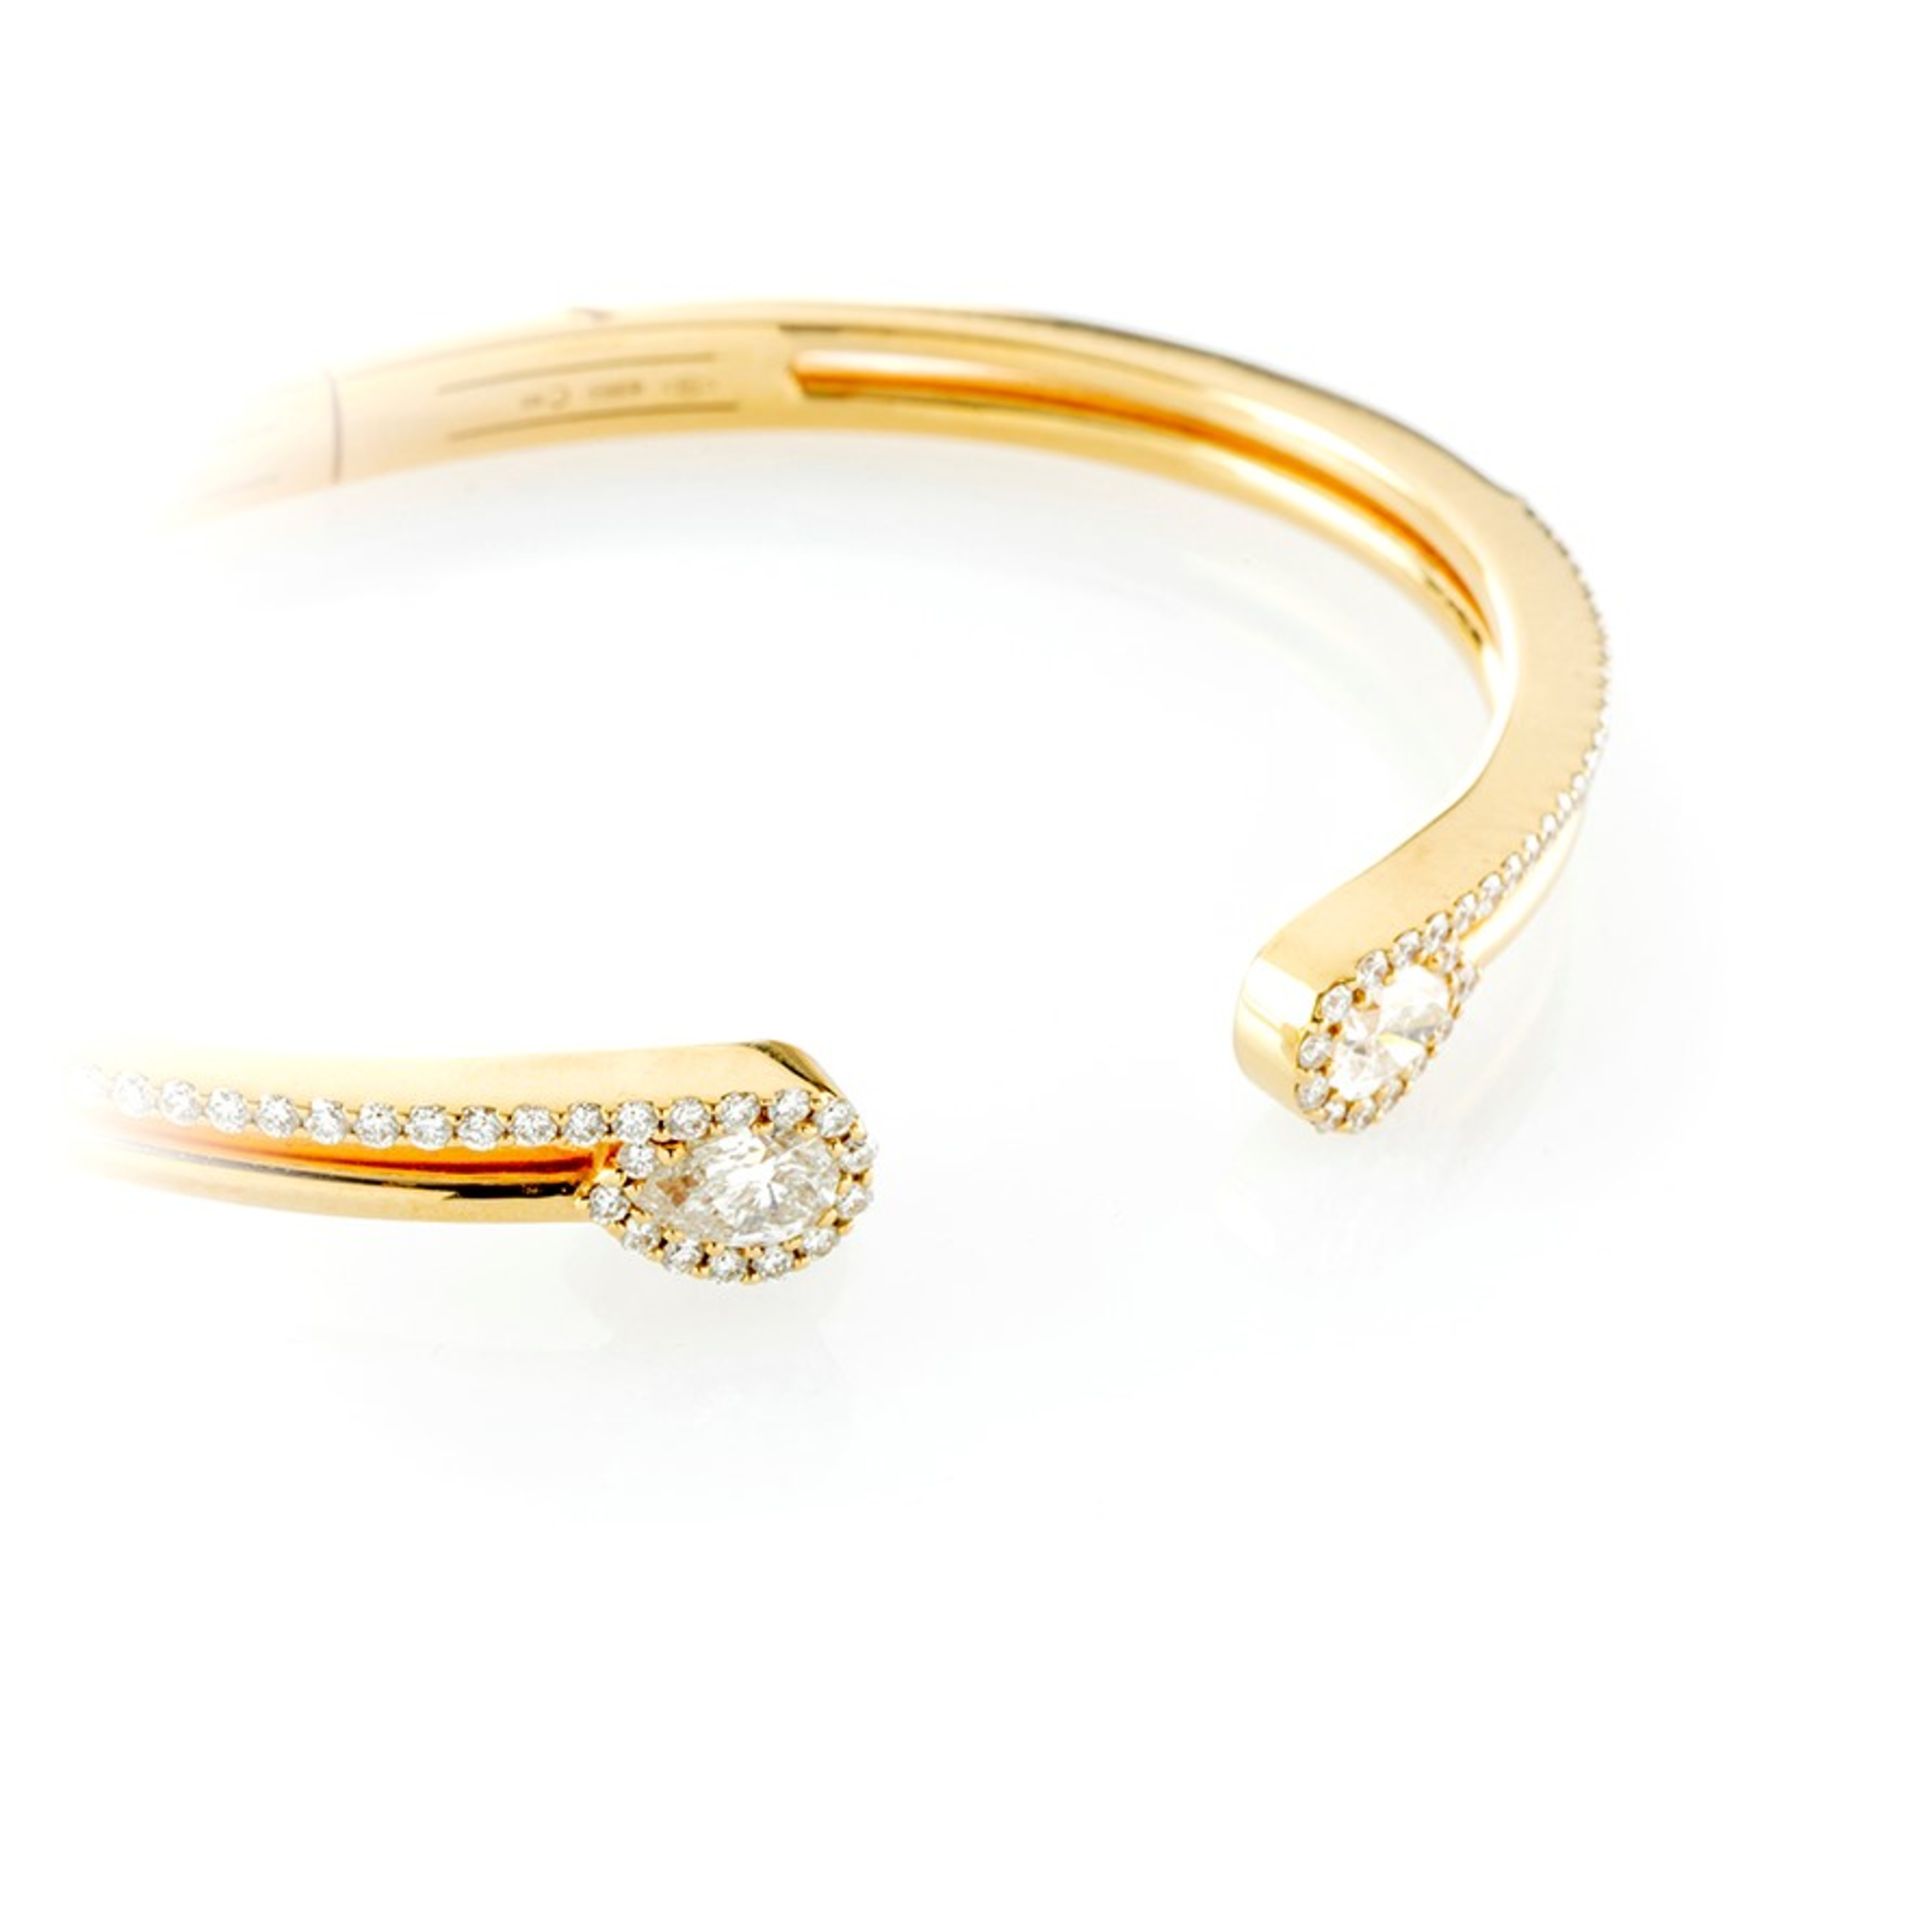 Bracciale rigido in oro giallo impreziosito da diamanti con taglio a brillante e a goccia - Image 2 of 2